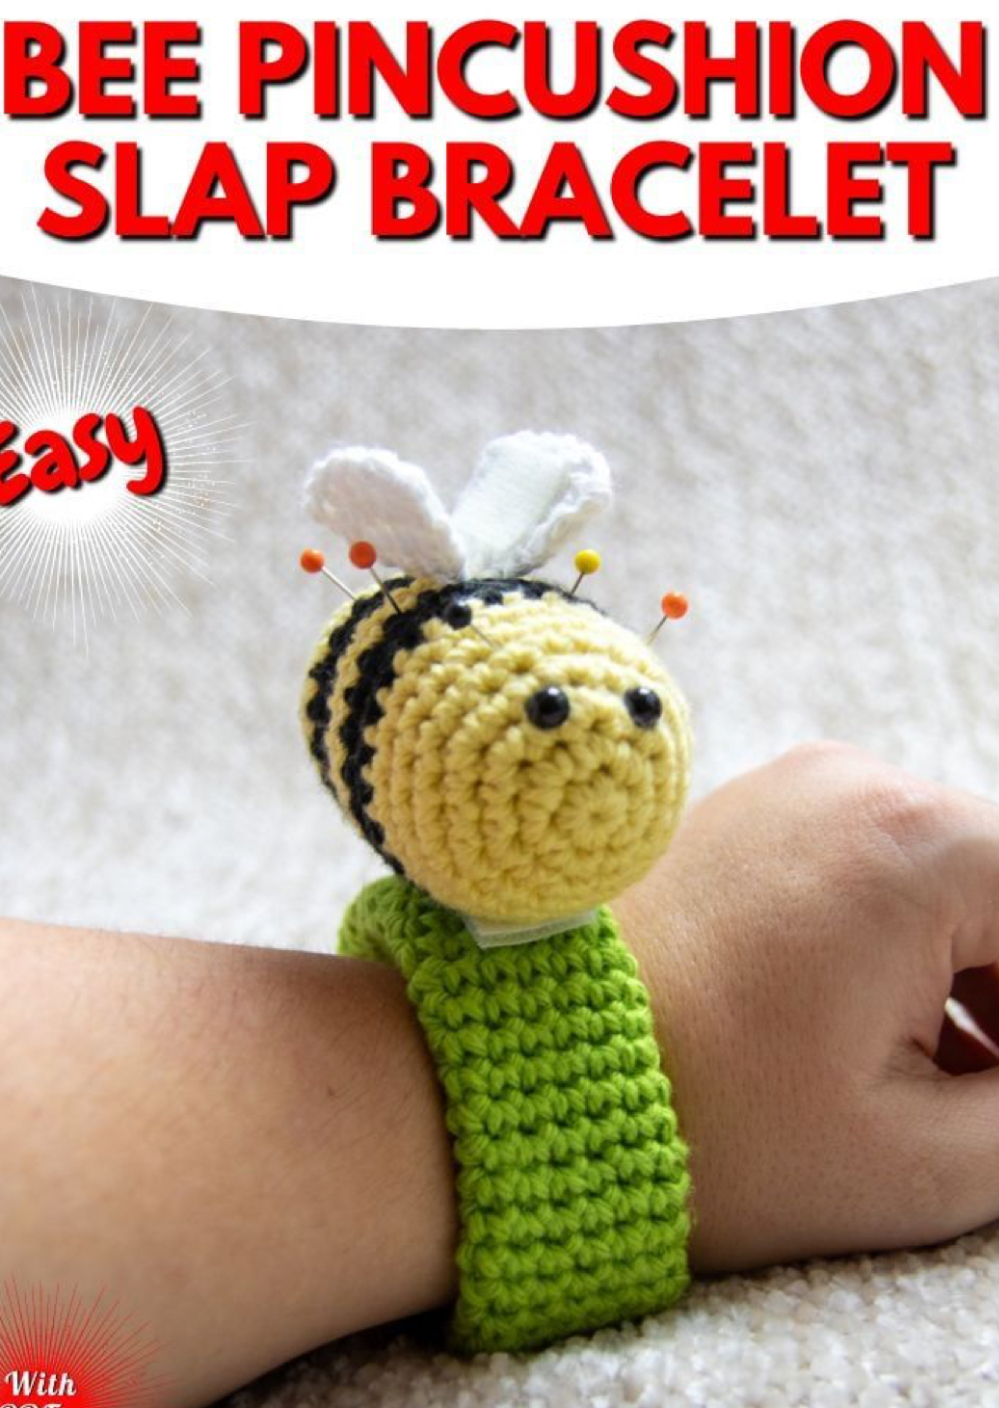 Crochet Bee Slap Bracelet and Pin Cushion (Free Pattern) – FREE CROCHET ...